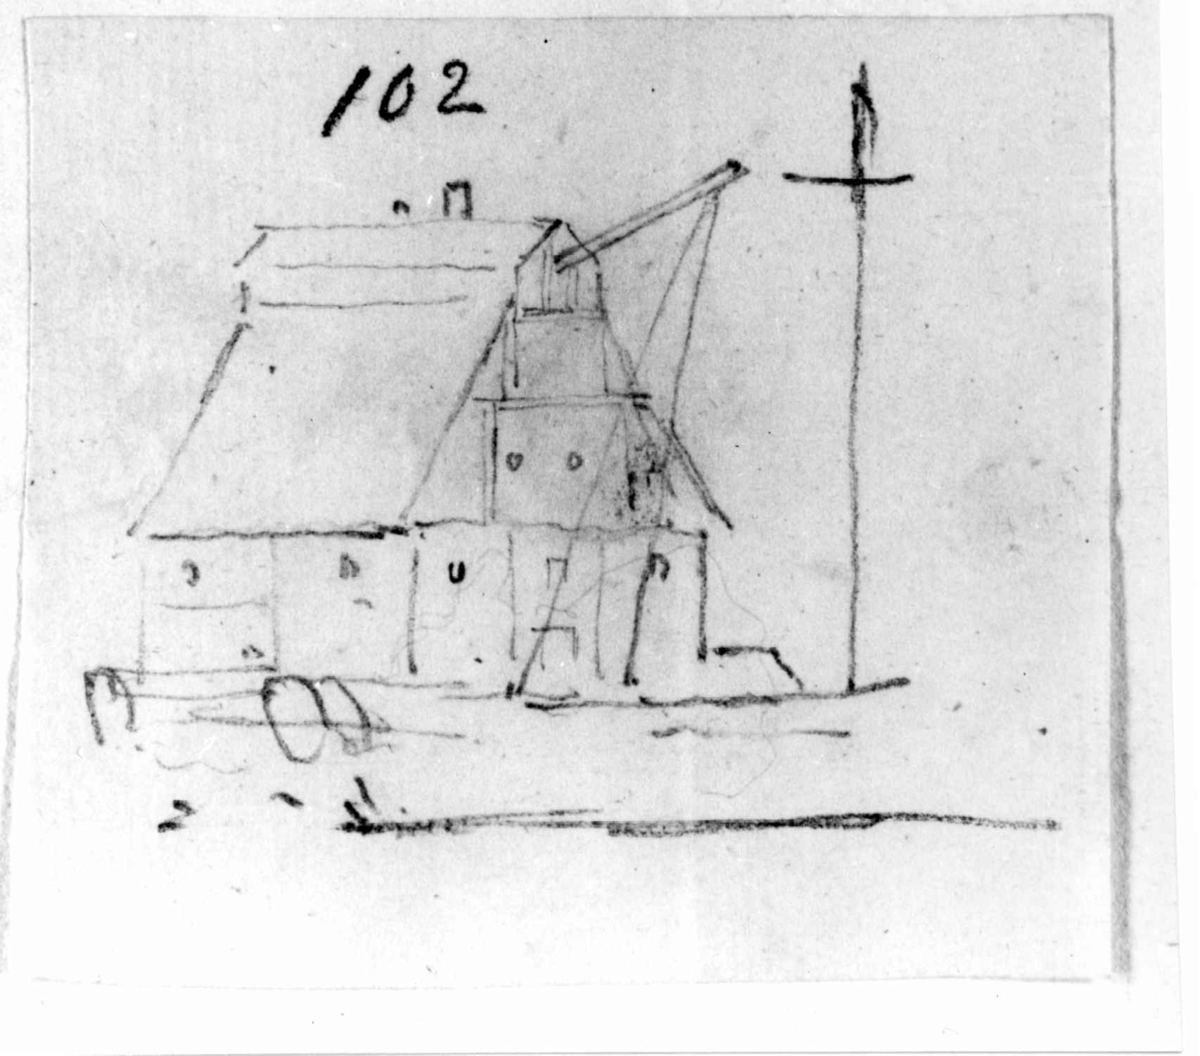 Oslo. Christiania. Blyantskisse av John Edy: Drawings, Norway, 1800. "Bod på brygga med kran". Skissealbum utlånt av Deichmanske bibliotek.
